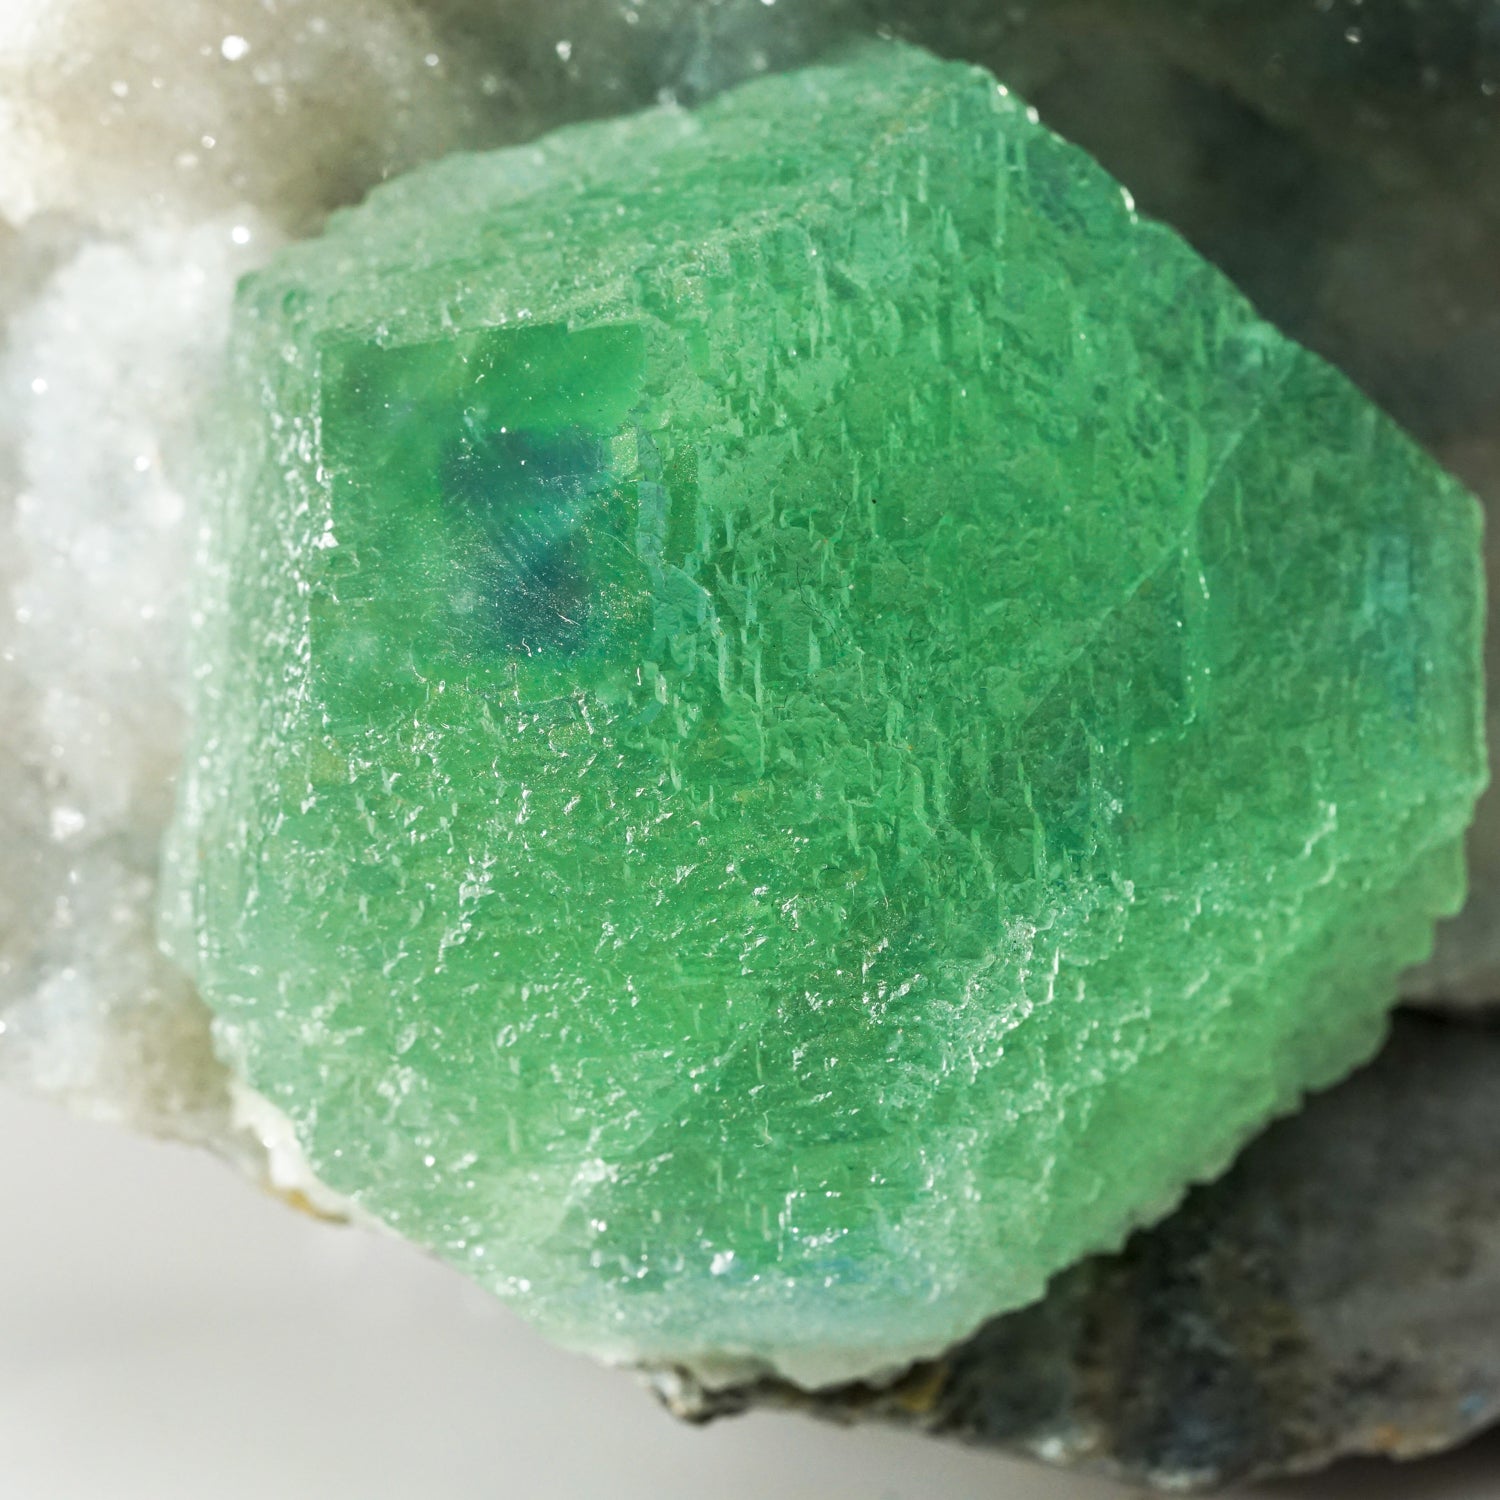 Green Fluorite on Quartz Matrix from from Ruyuan, Lechang, Guandong, China (2.5 lbs)